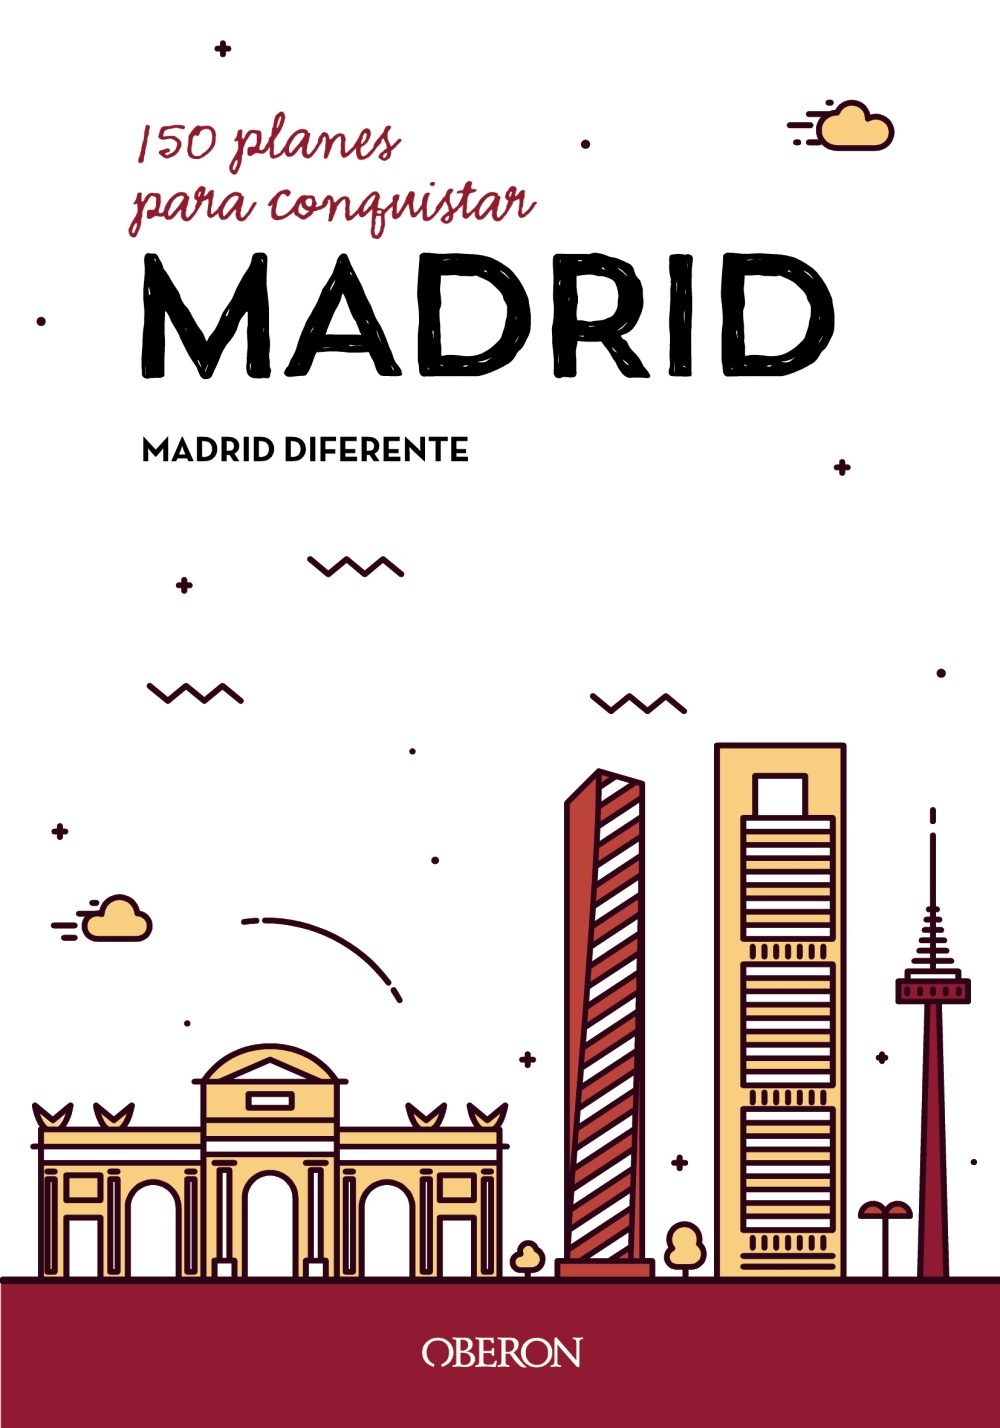 150 planes para conquistar Madrid